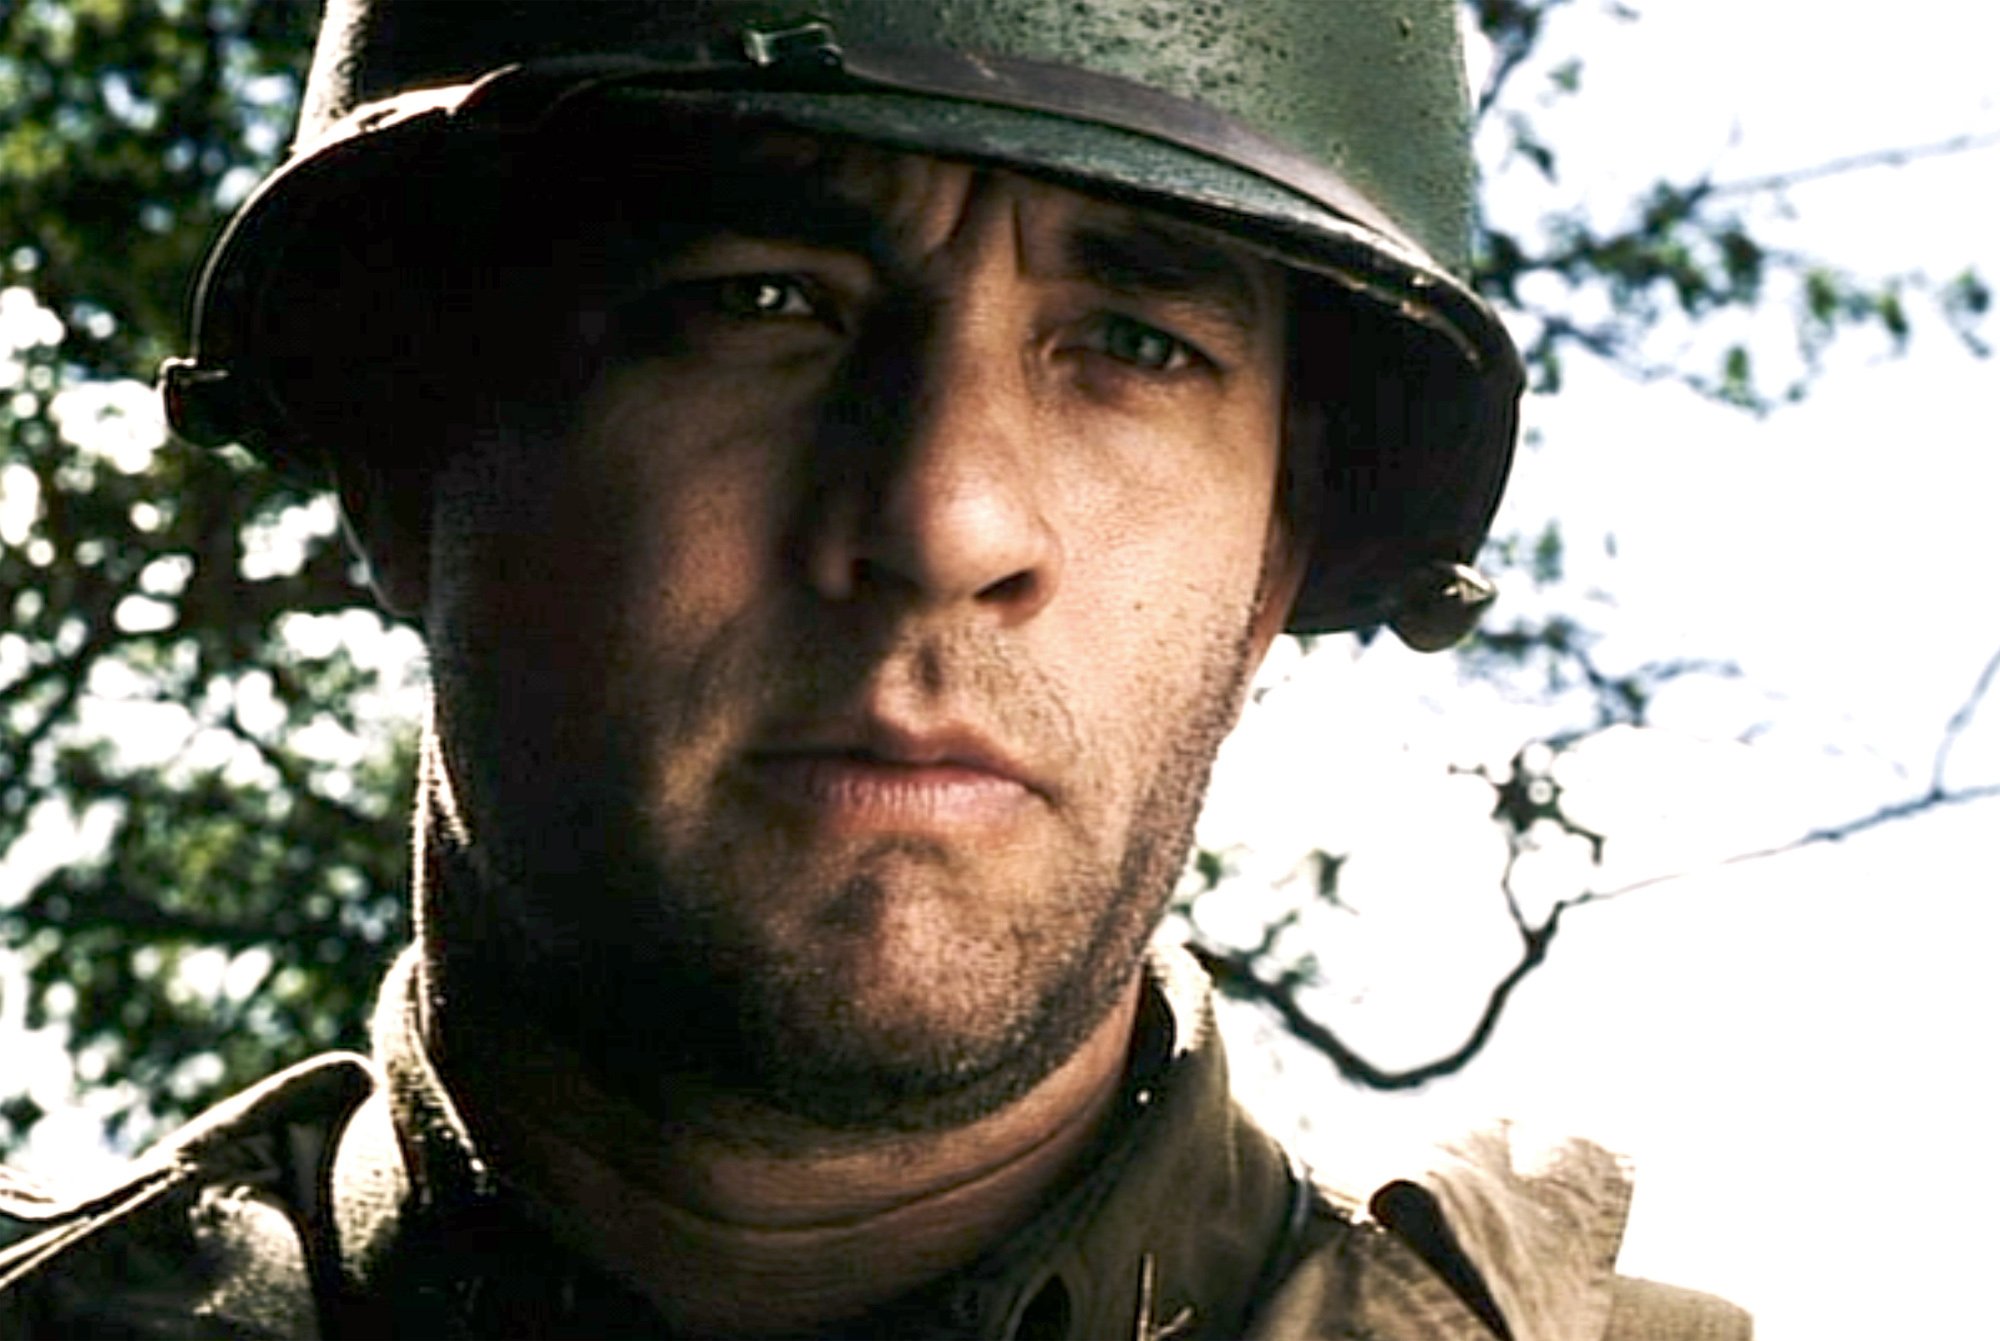 Tom Hanks war movie 'Saving Private Ryan' closeup of hanks in helmet